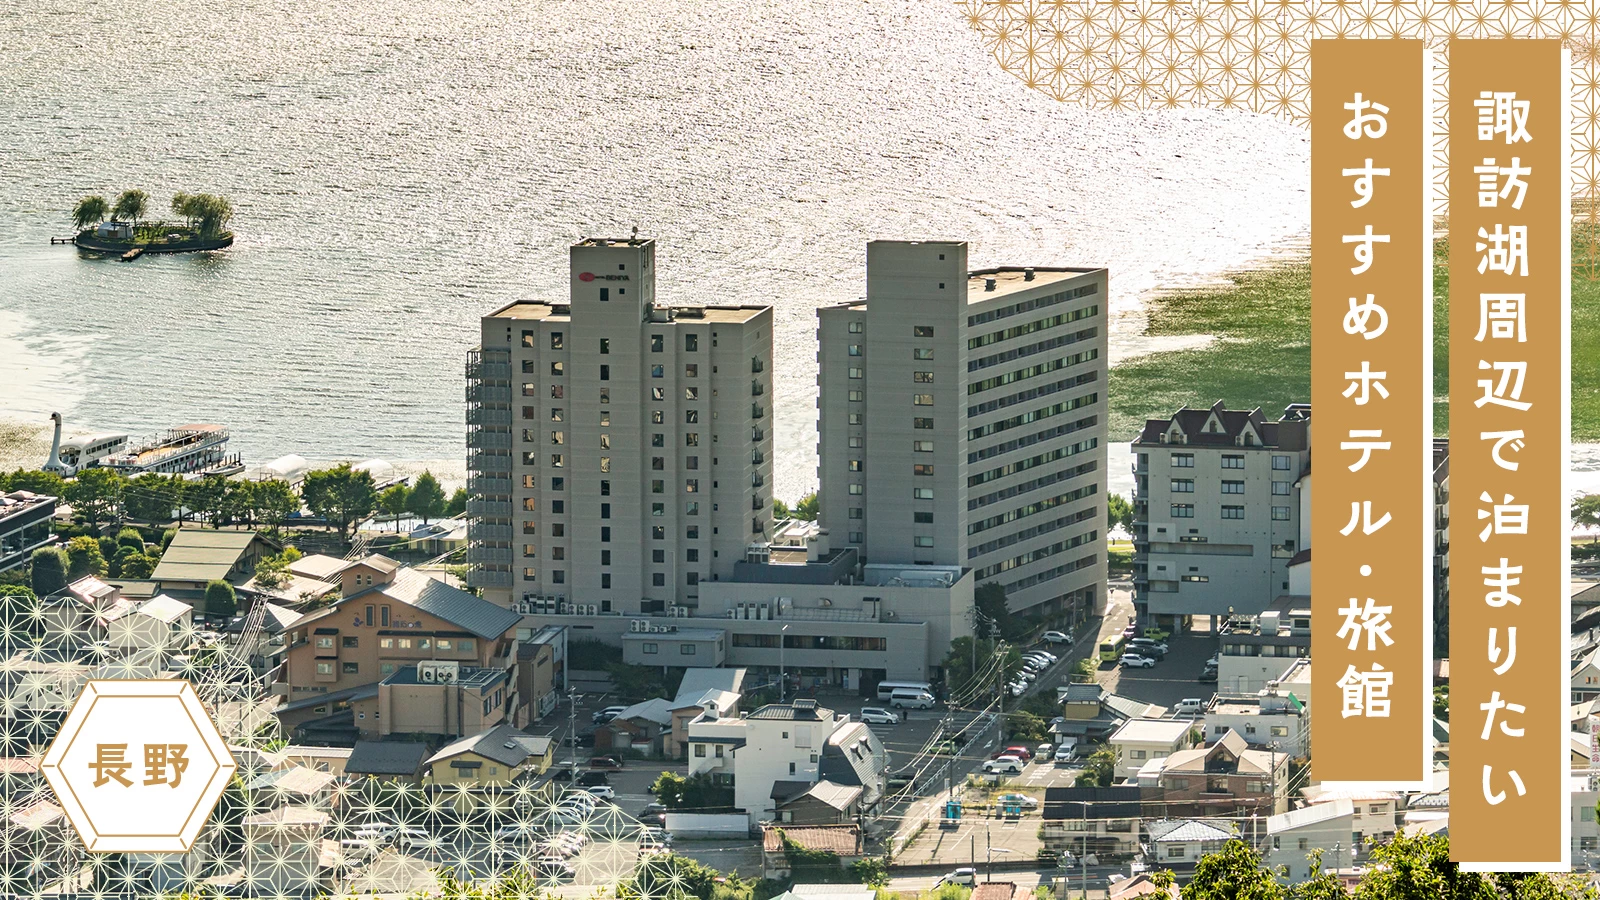 【長野】諏訪湖周辺で泊まりたいおすすめホテル・旅館6選